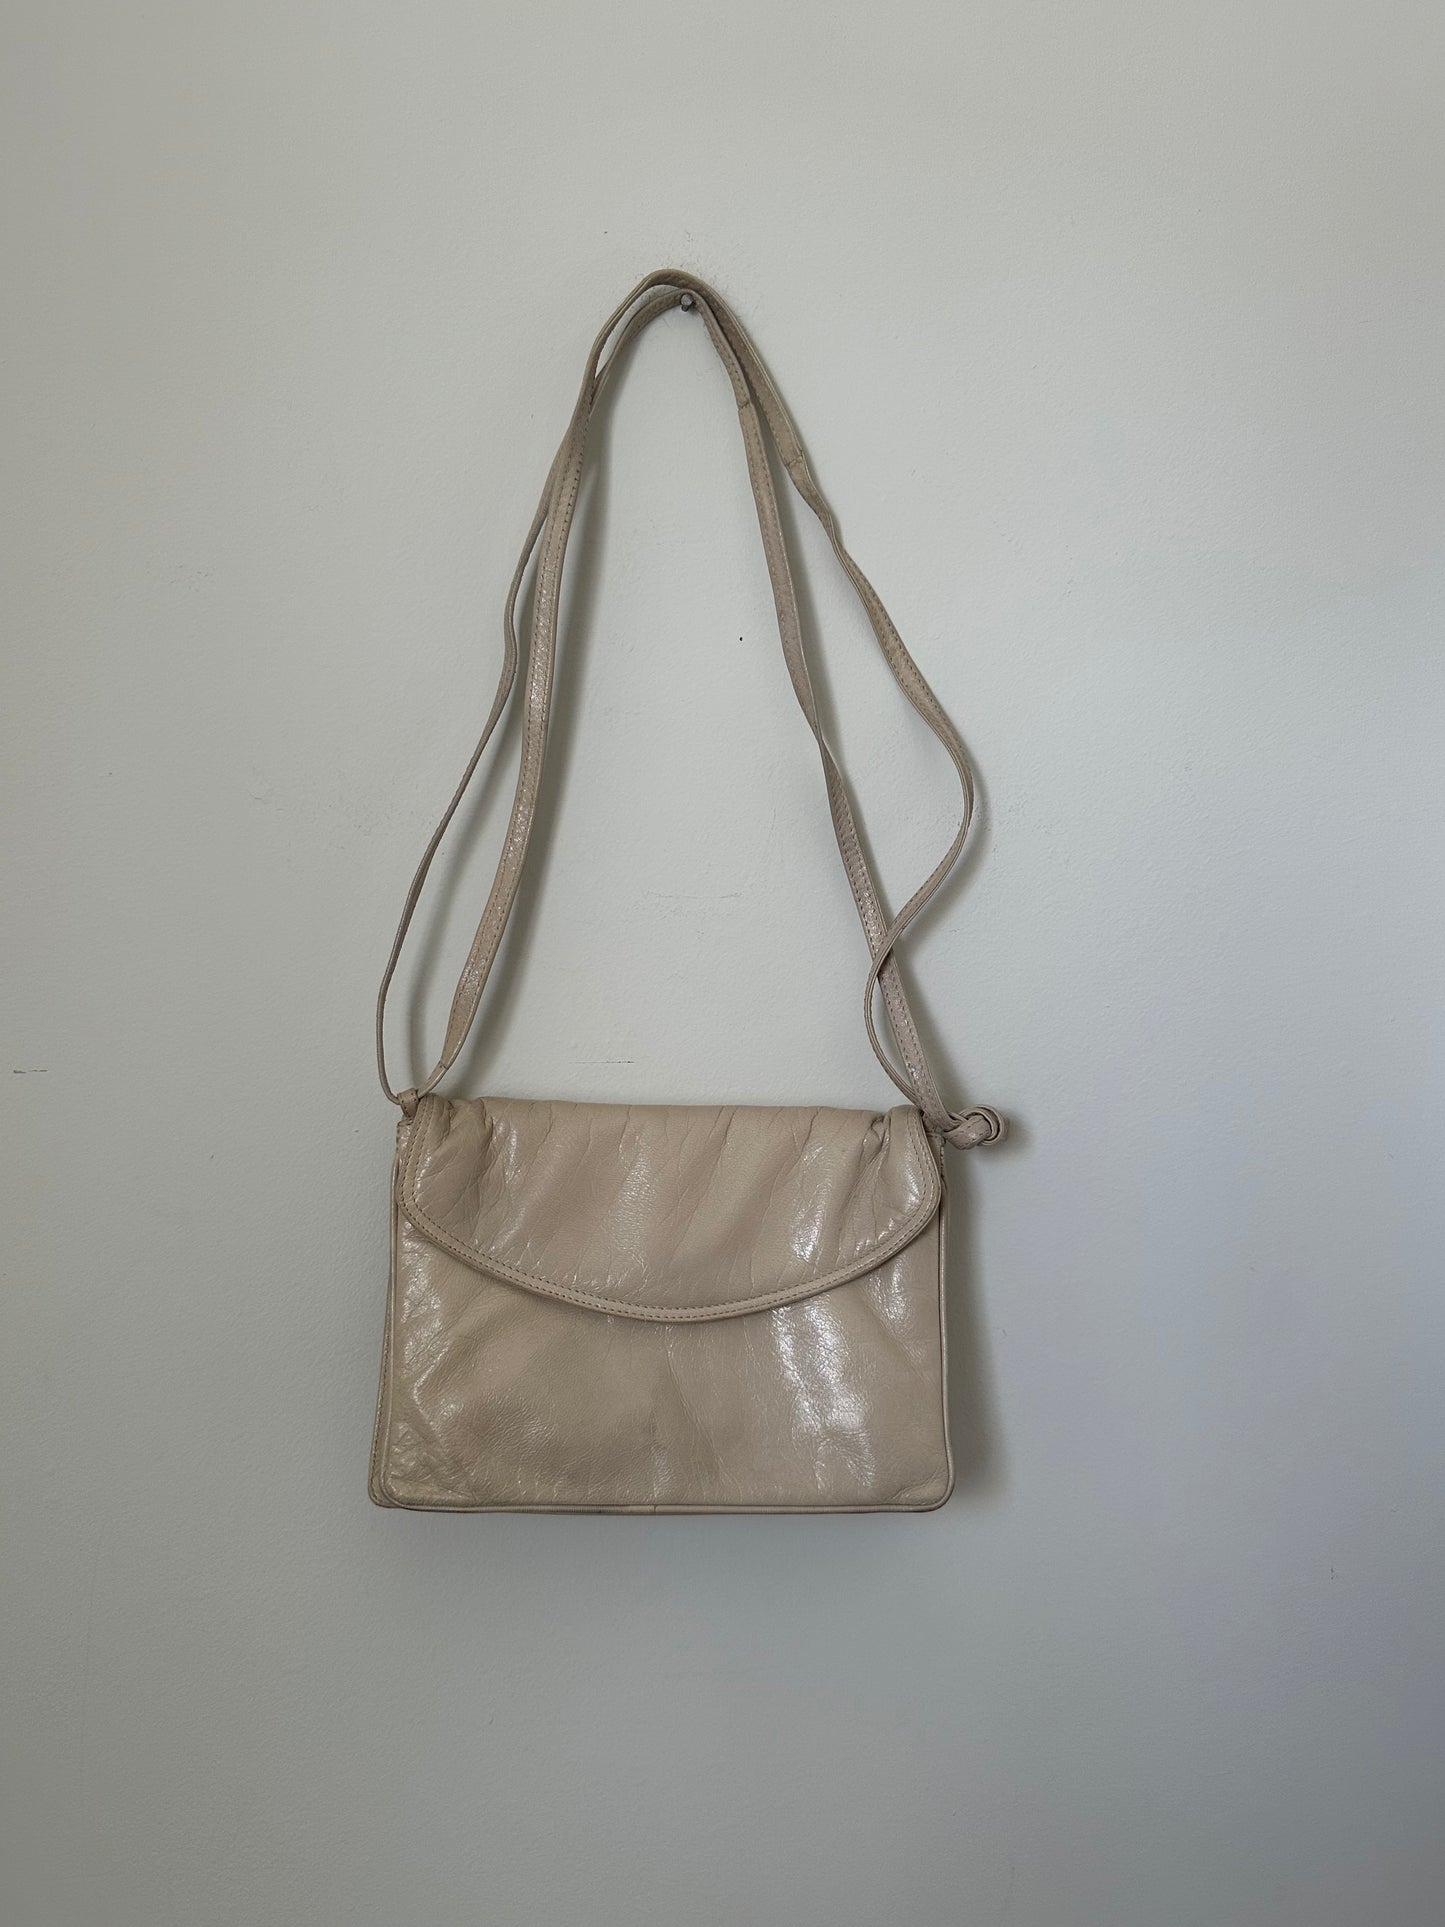 Bottega Veneta Vintage Leather Shoulder Bag